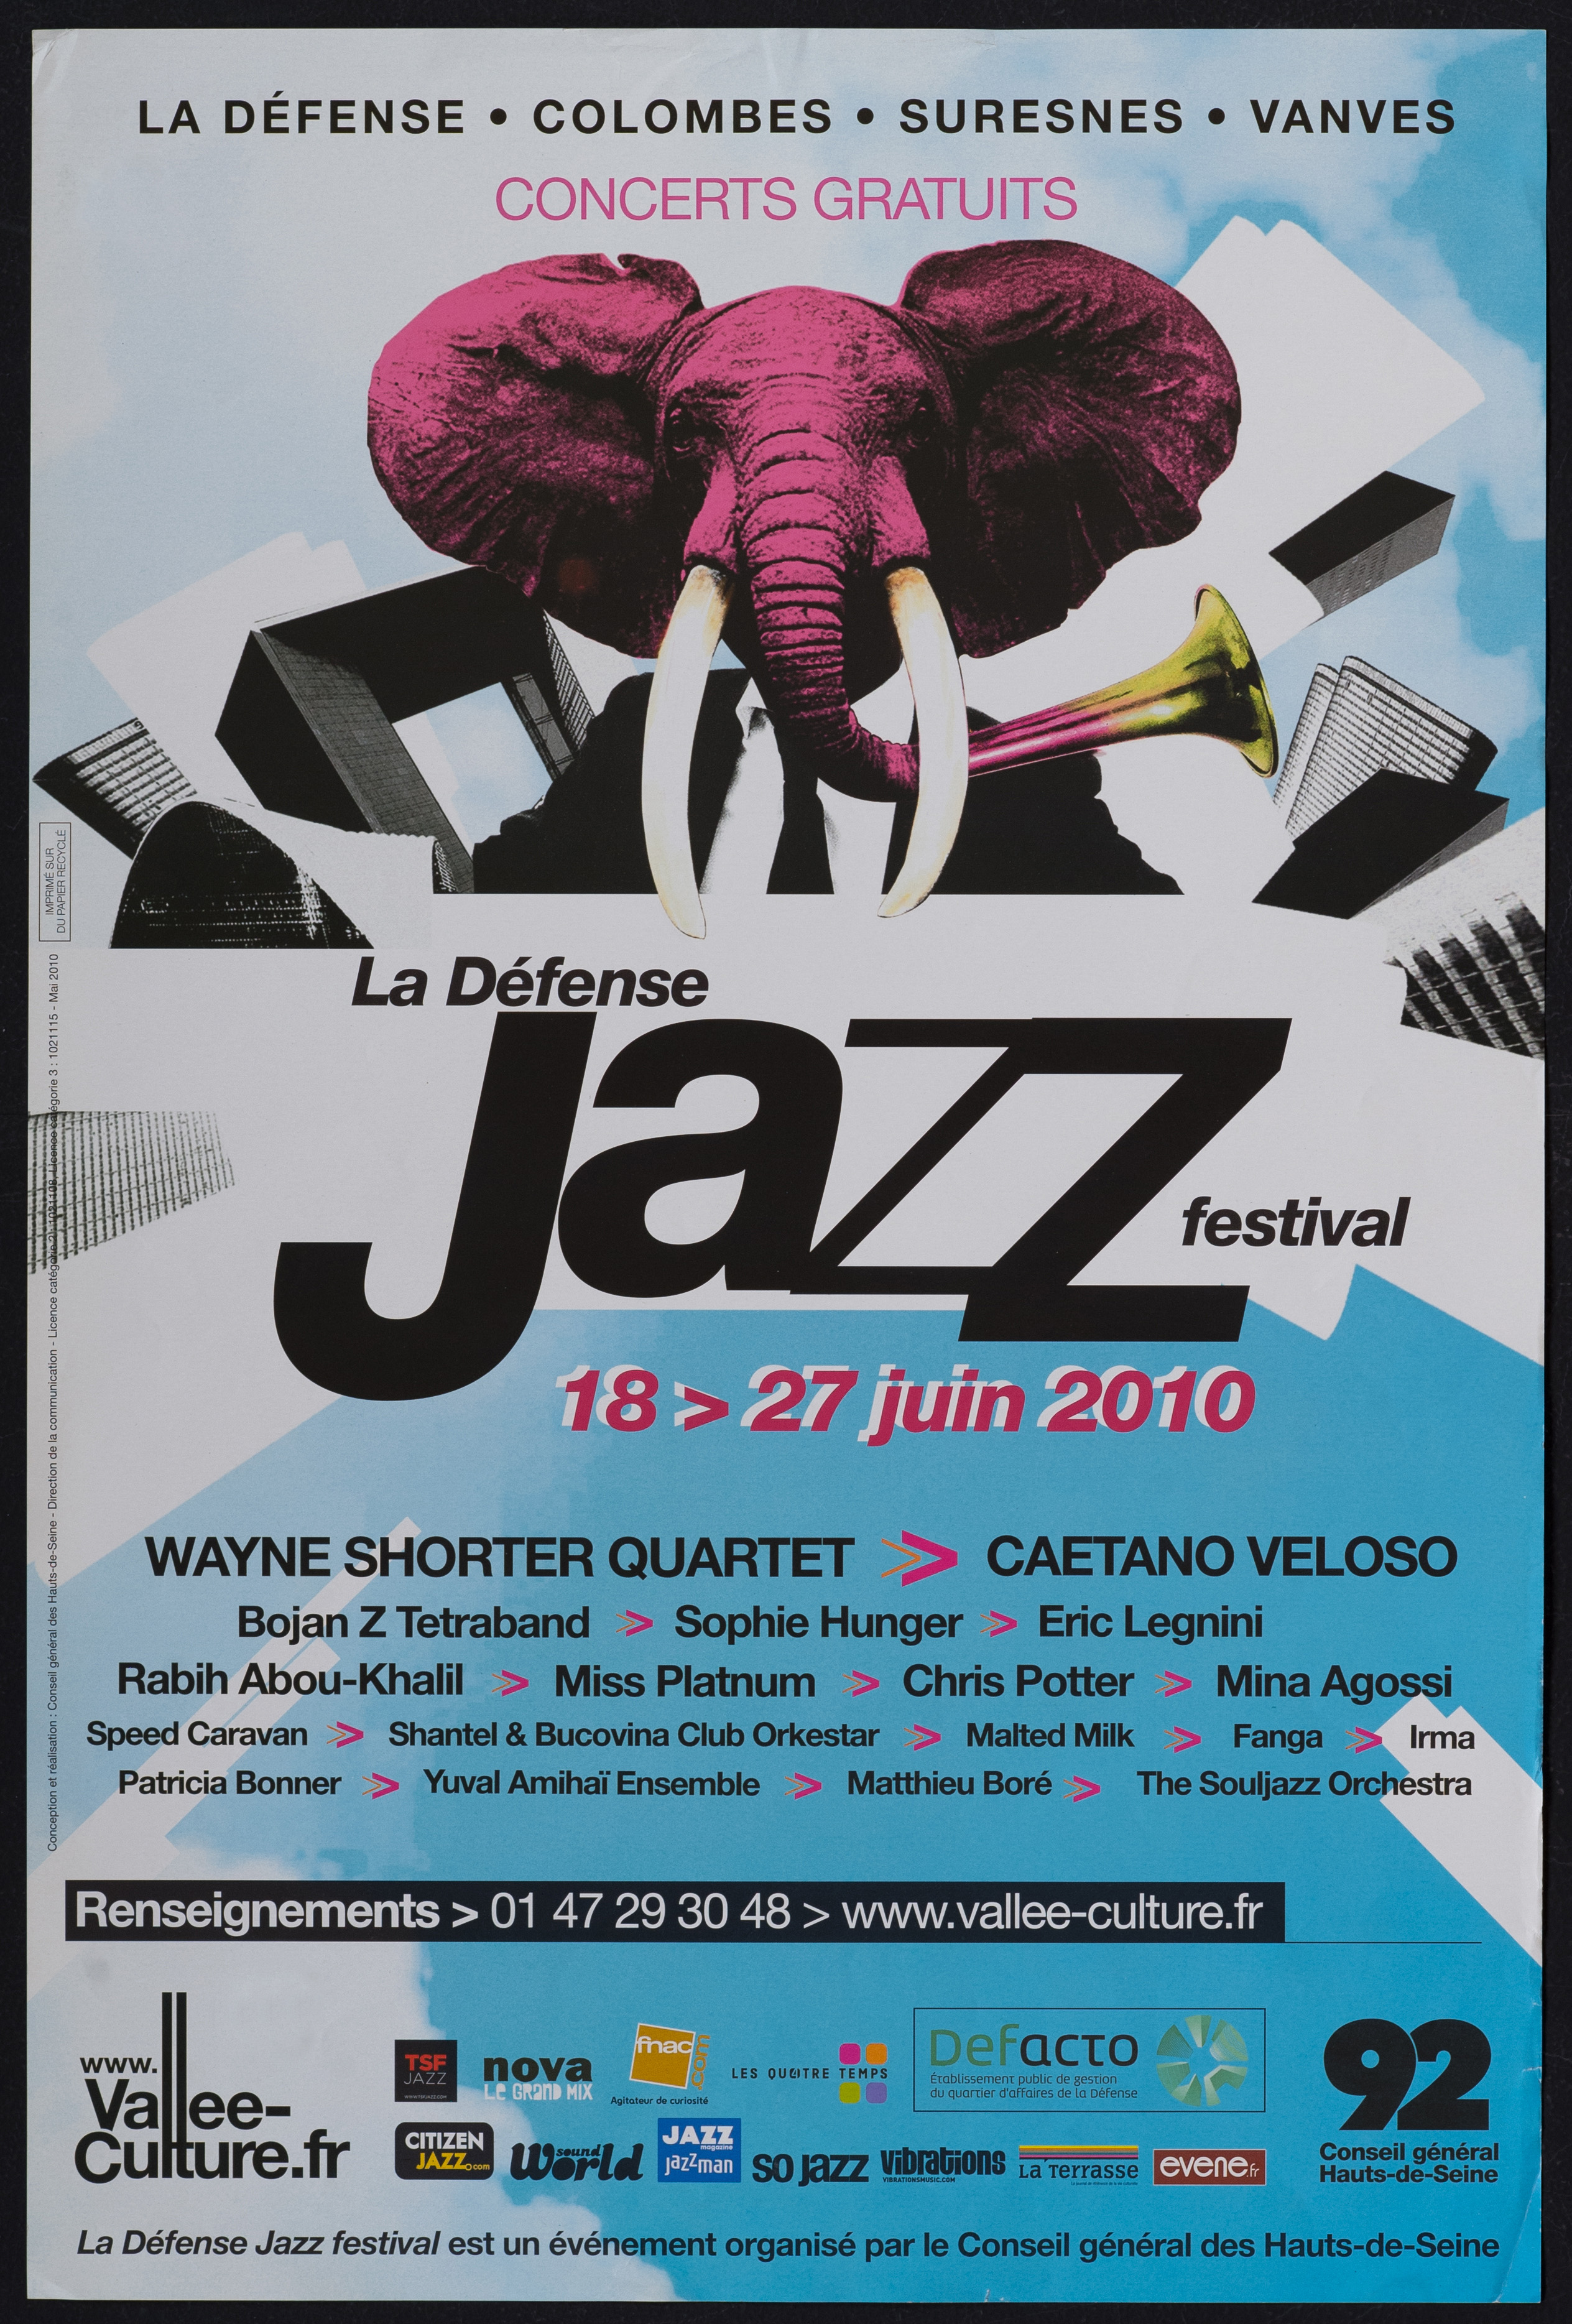 La Défense Jazz festival. 18 mai-17 juin 2010. La Défense Jazz festival est un événement organisé par le conseil général des Hauts-de-Seine. - CG 92, 2010. - 1 affiche ill. coul., 60 x 40 cm.